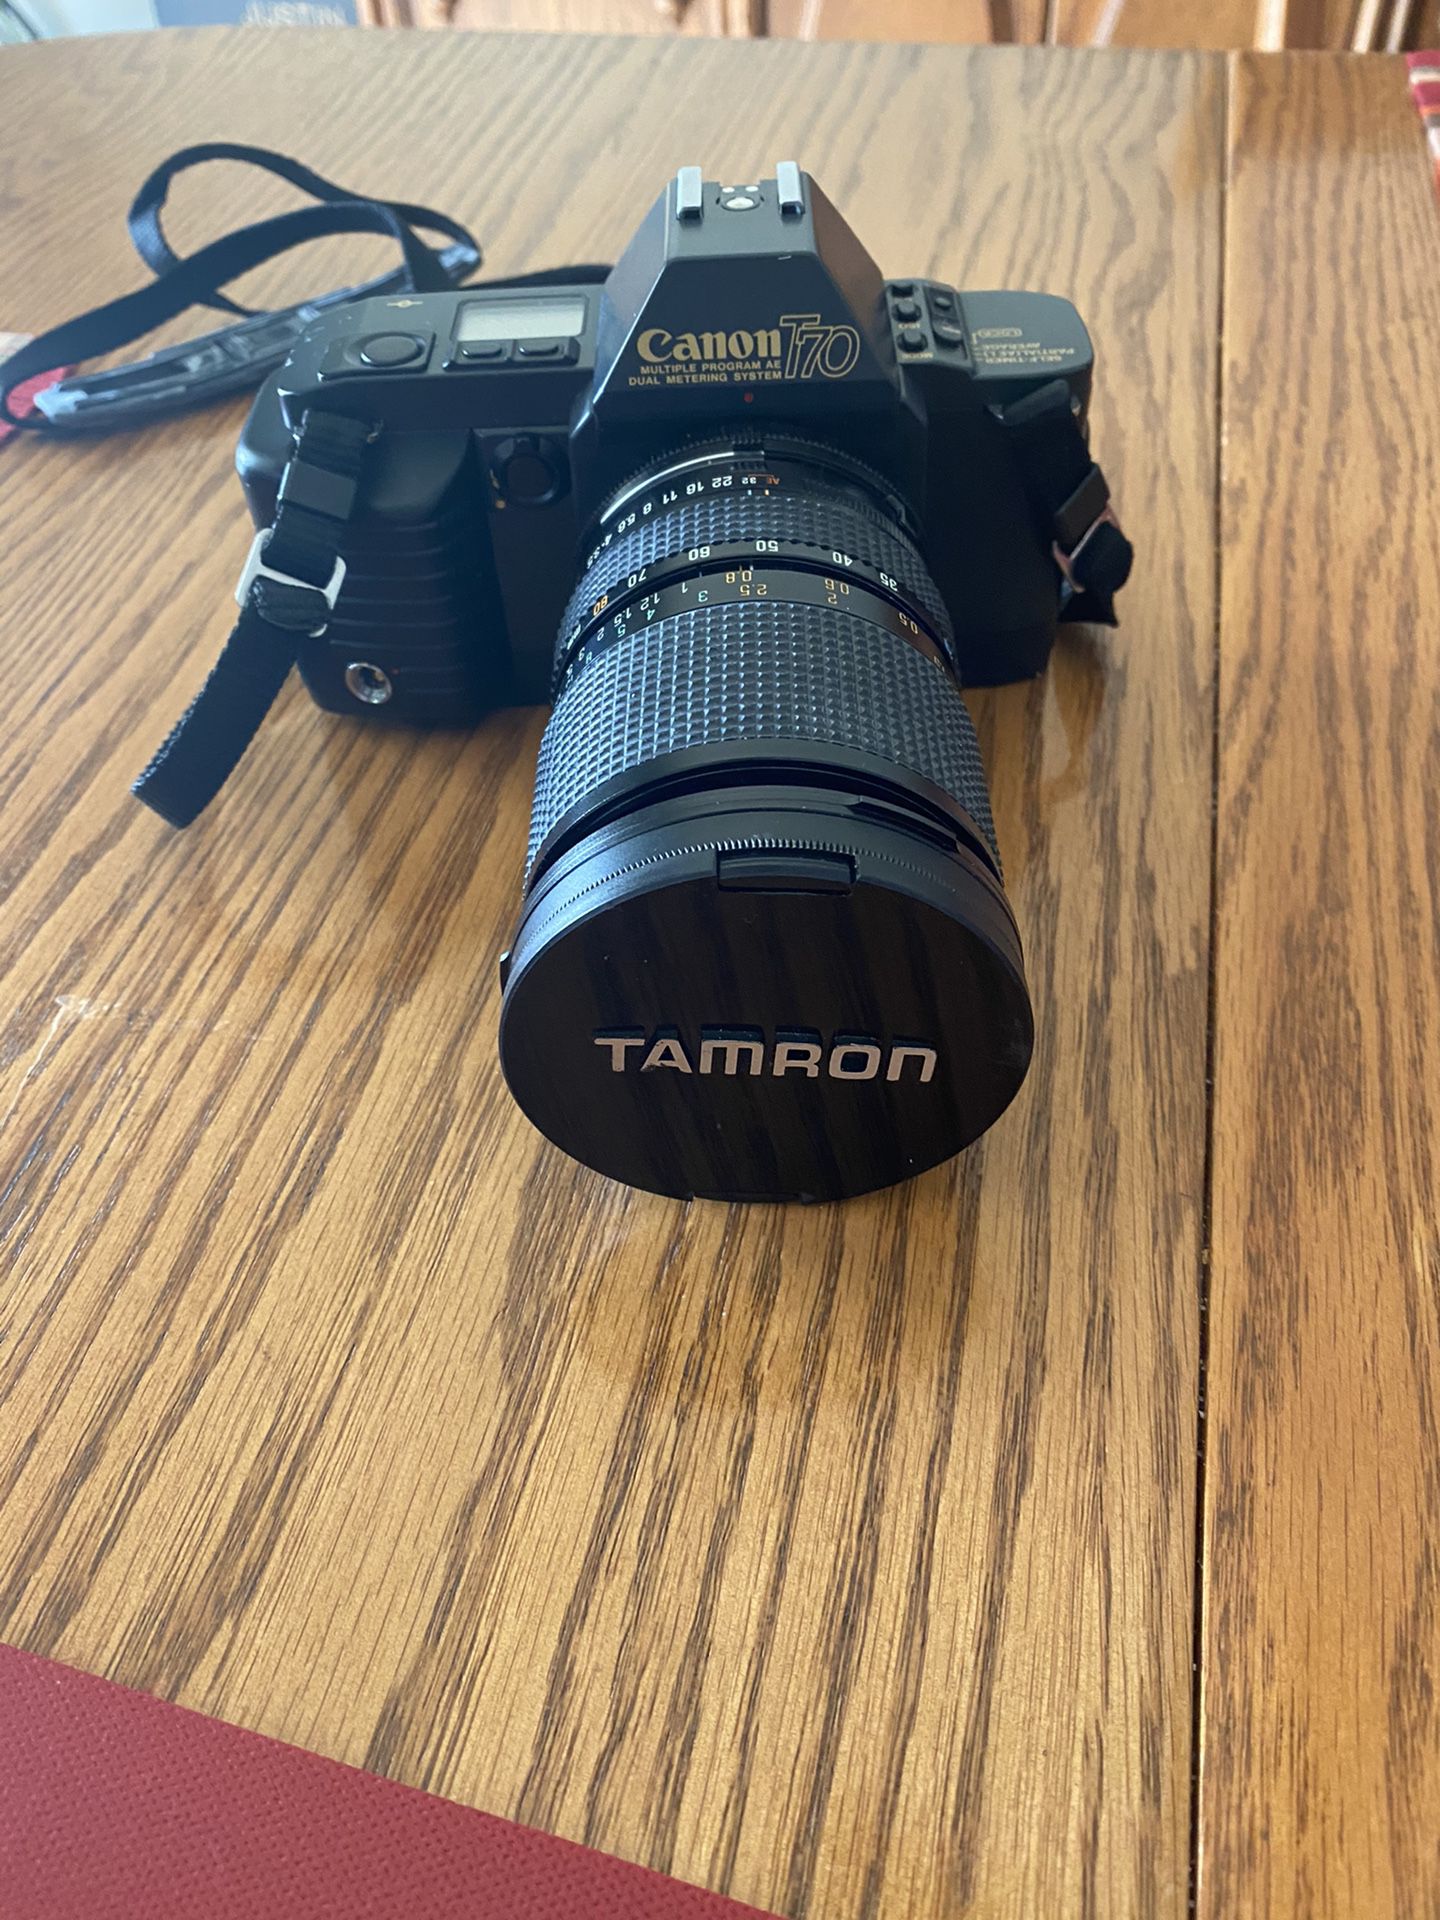 Canon T70 35mm Camera